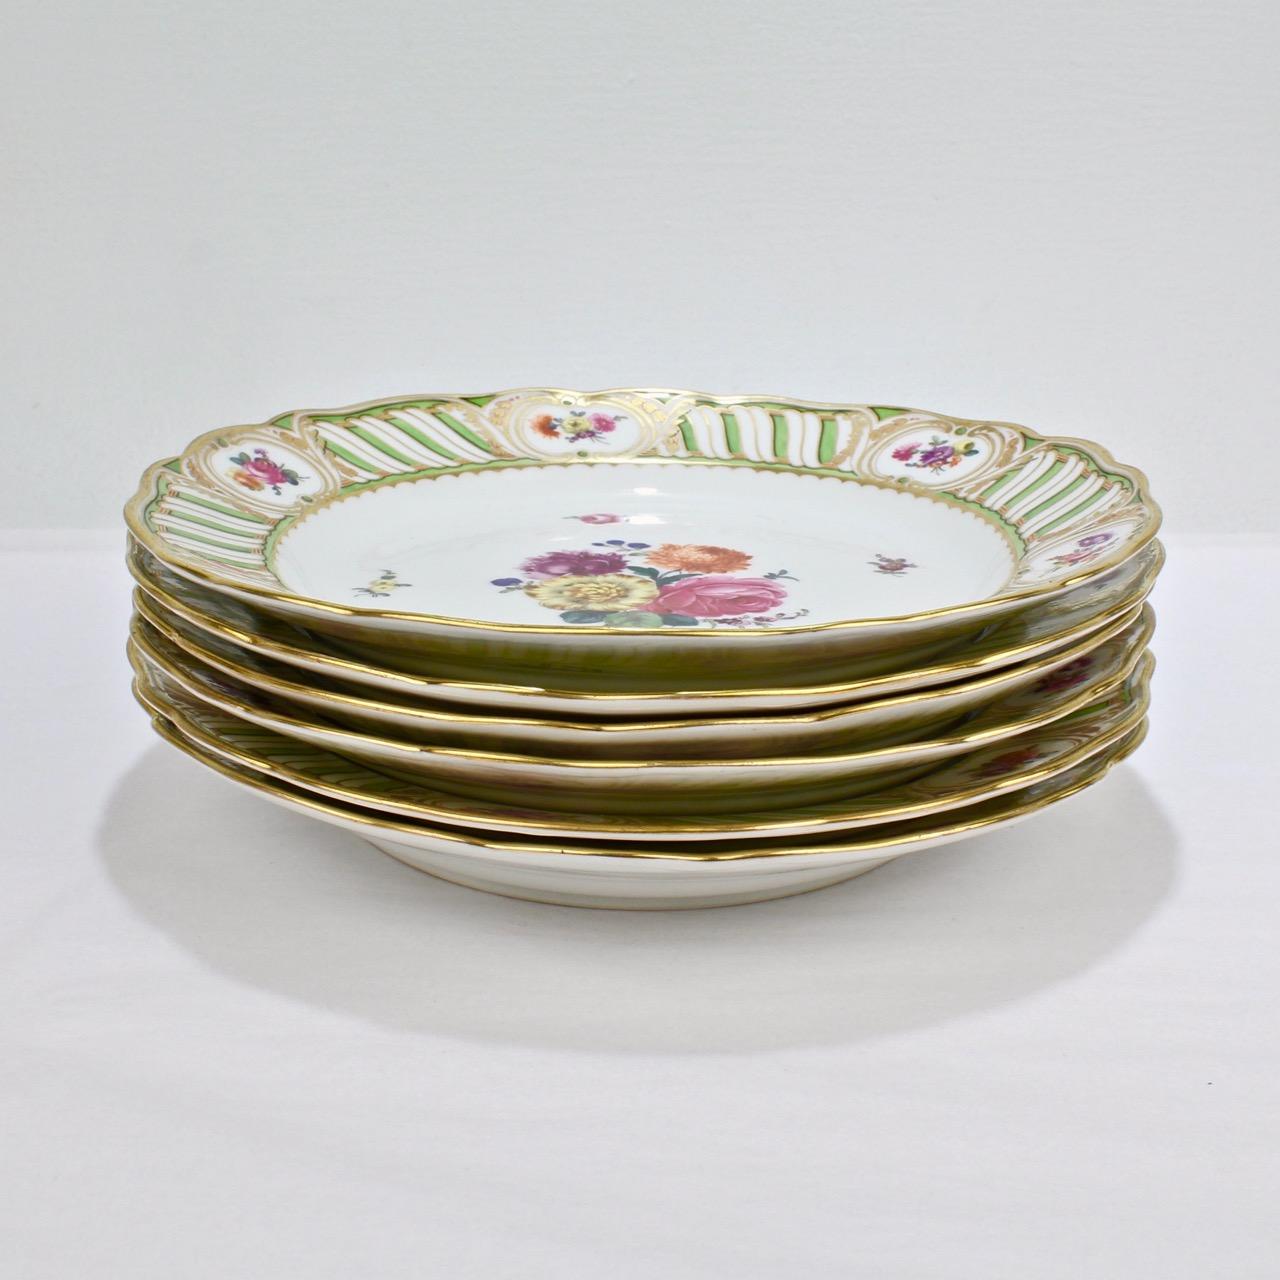 Austrian 6 Antique Vienna Porcelain Plates with Green Borders & Deutsche Blumen Flowers